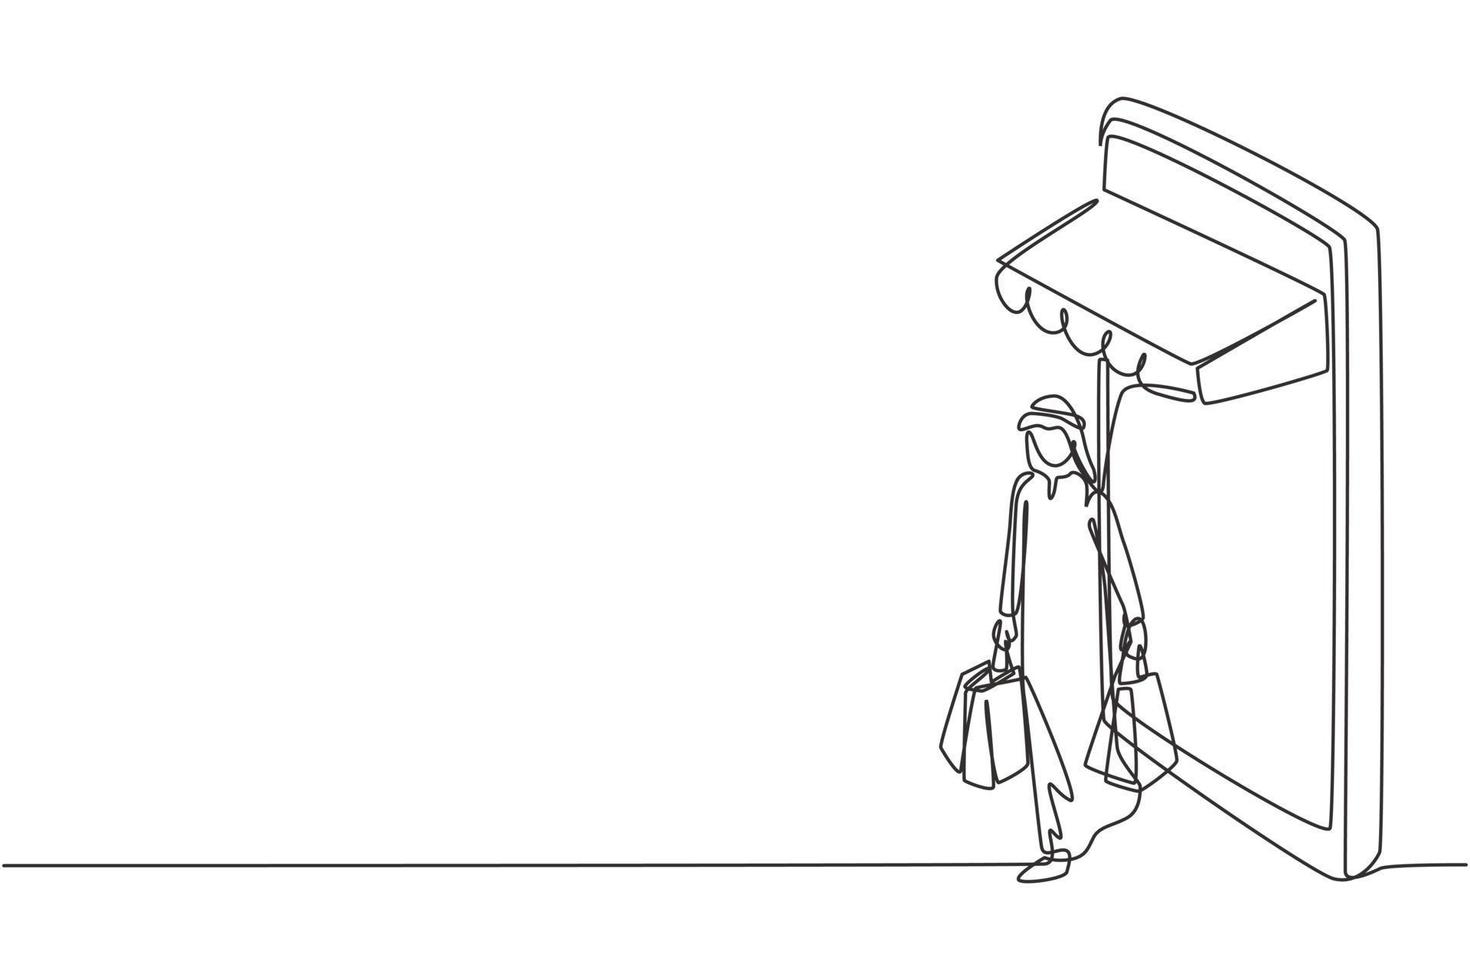 Dibujo de línea continua única hombre árabe saliendo de la pantalla del teléfono inteligente con dosel sosteniendo una bolsa de compras. concepto de consumismo y estilo de vida digital. Ilustración de vector de diseño gráfico de dibujo de una línea dinámica